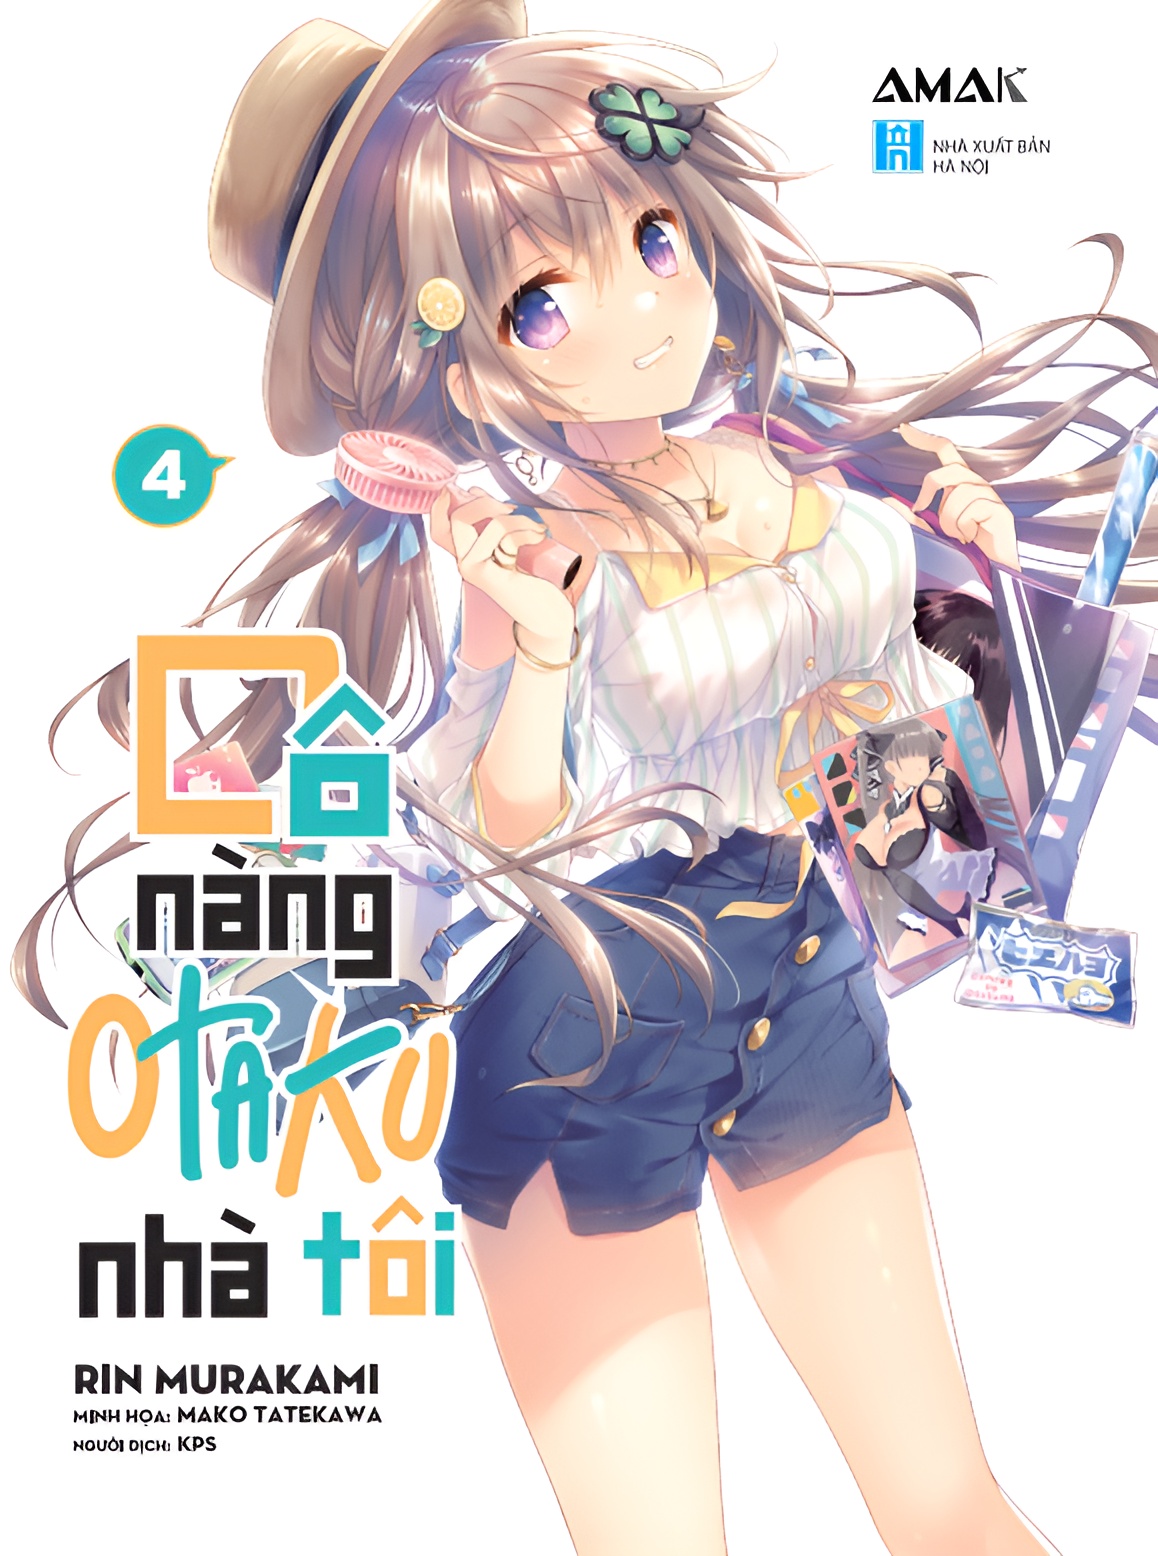 [Light Novel] Cô Nàng Otaku Nhà Tôi – Tập 4 - Amakbooks